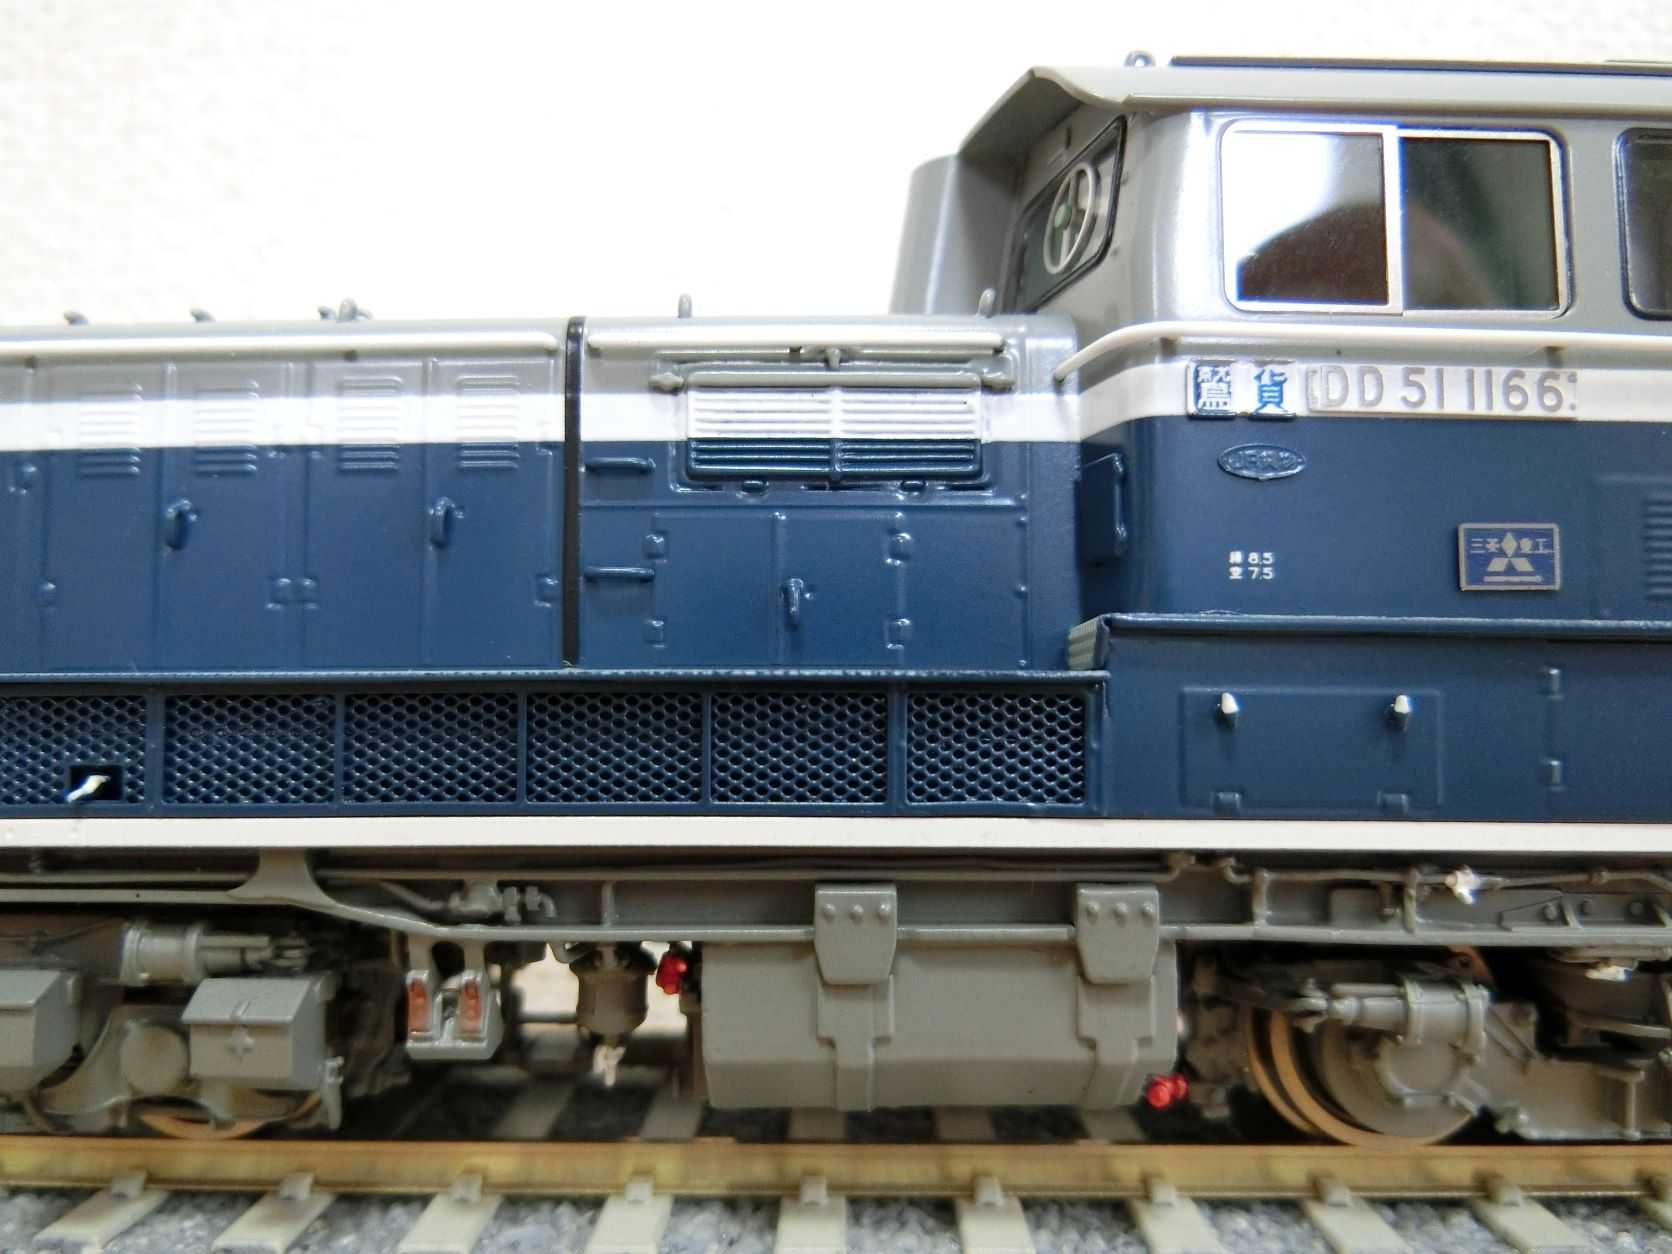 ムサシノモデルDD51 1166号機 青更新色 鷲別 - 鉄道模型